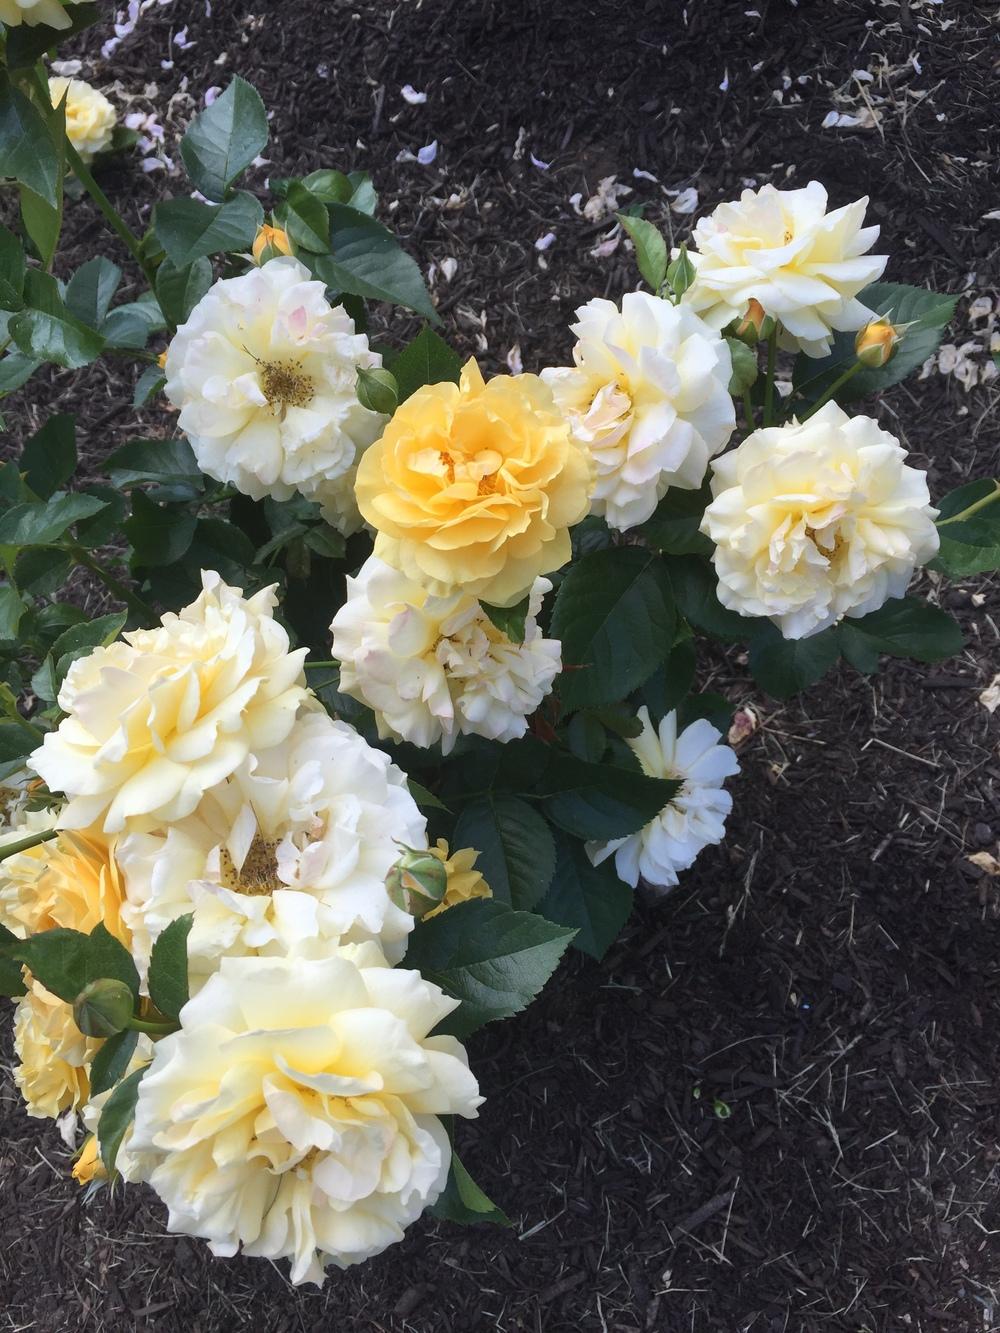 Photo of Floribunda Rose (Rosa 'Julia Child') uploaded by Bmyoung